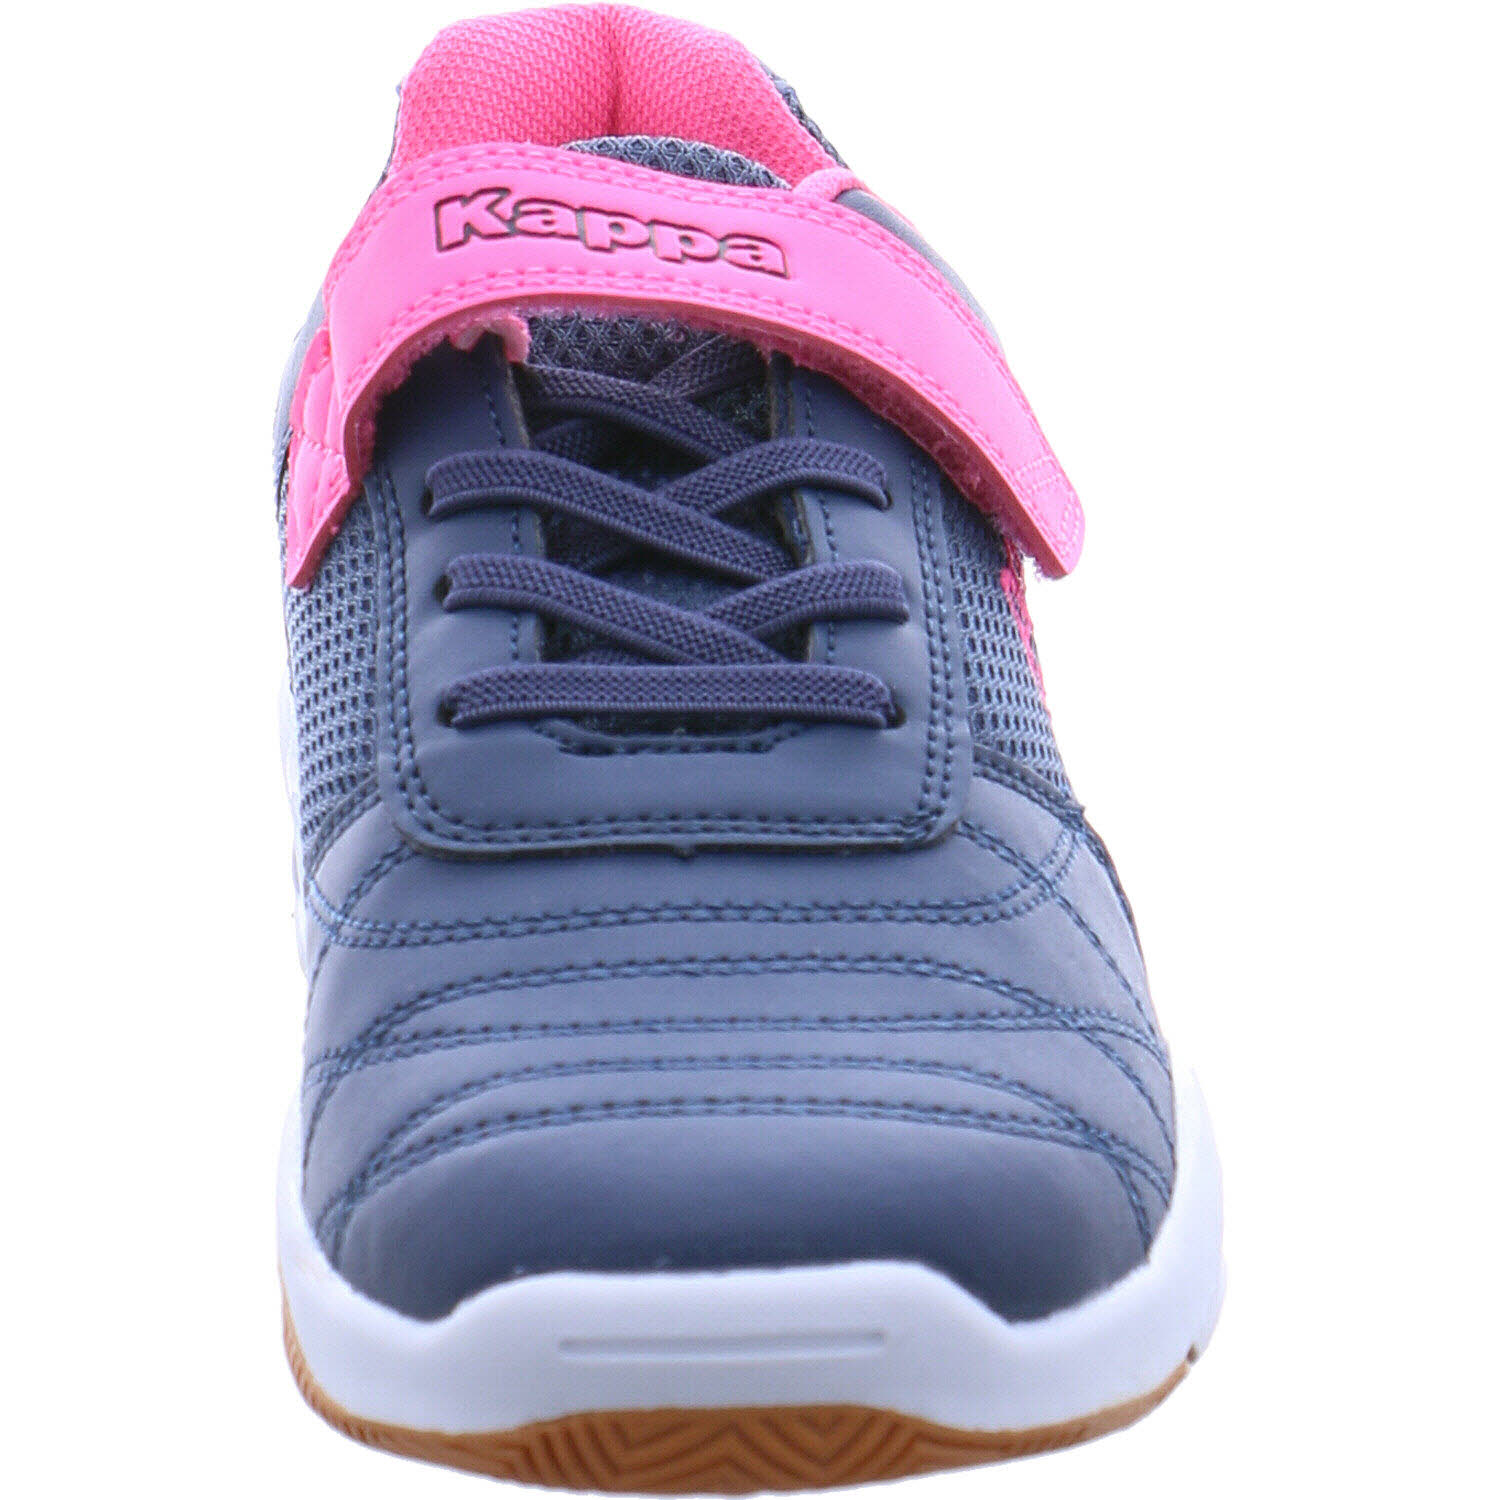 Kappa Hallenschuh Stylecode: 260819 MFK Droum II MF K für Mädchen in blau/pink  | P&P Shoes